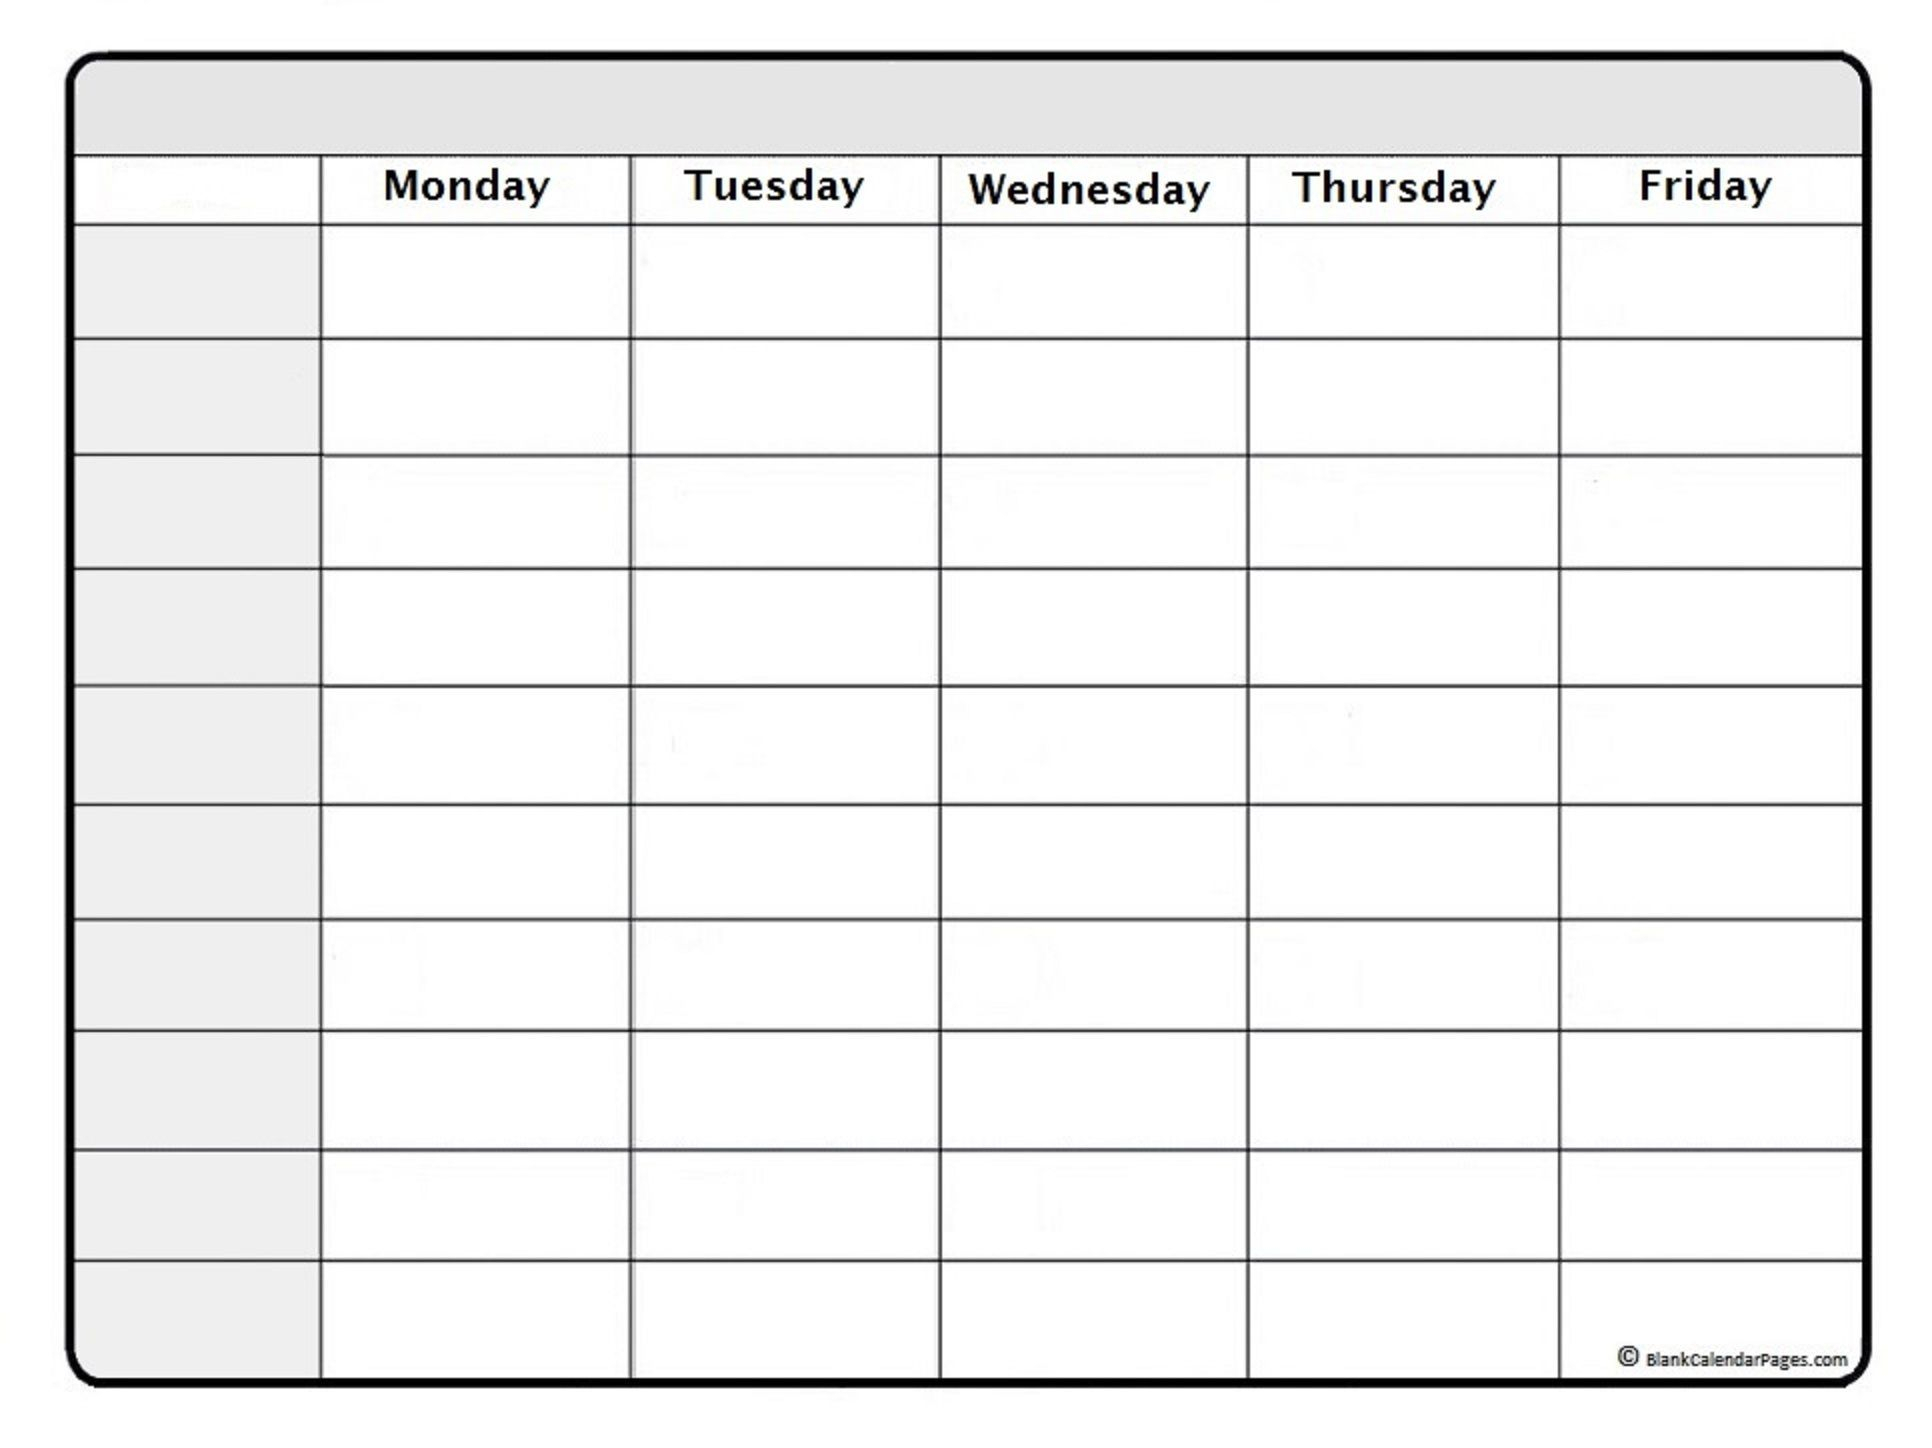 Best One Week Calendar Printable Blank In 2020 Weekly Calendar Printable Weekly Calendar